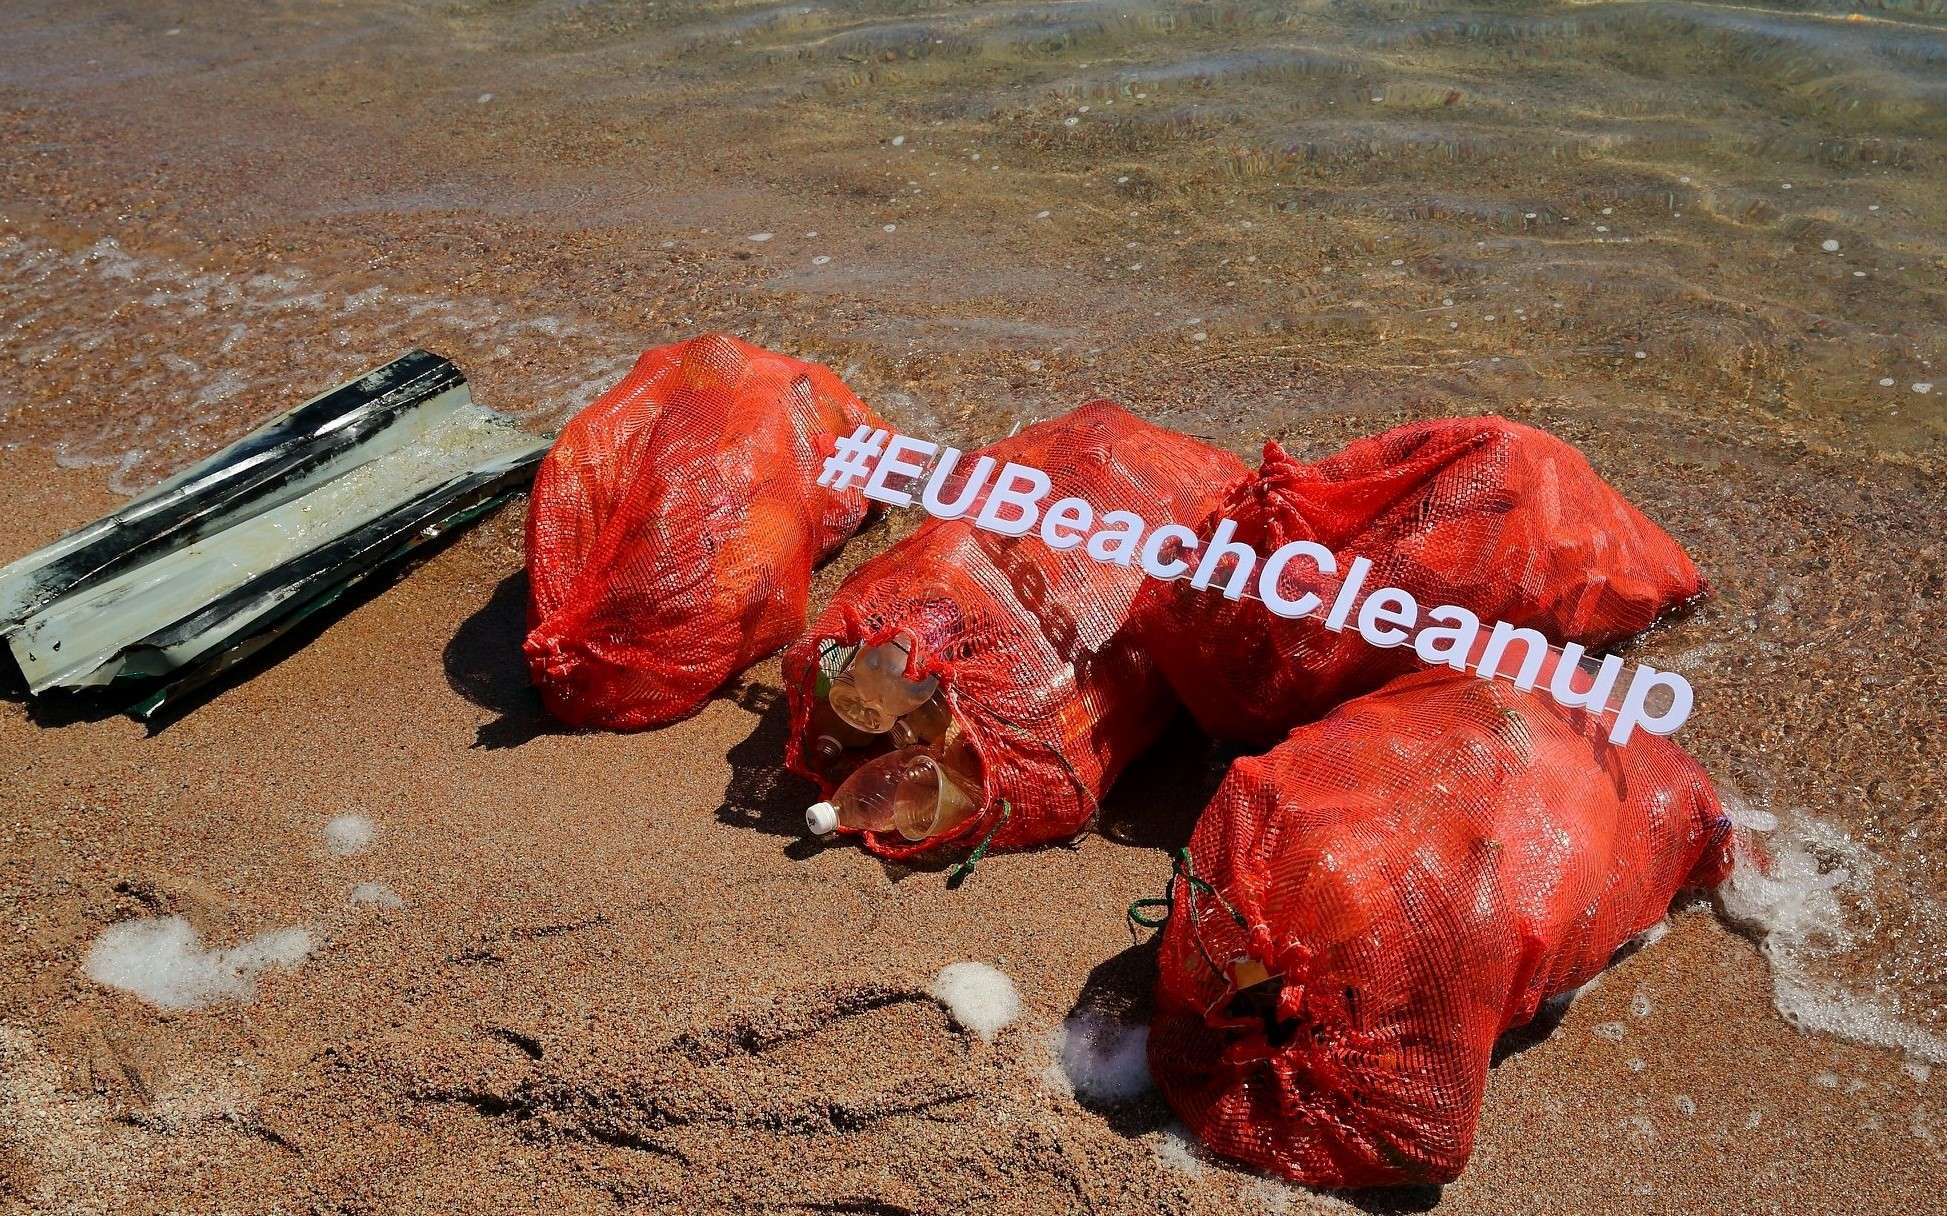 Пластик, бумага и стекло – чем еще мусорят вандалы на пляжах Иссык-Куля?